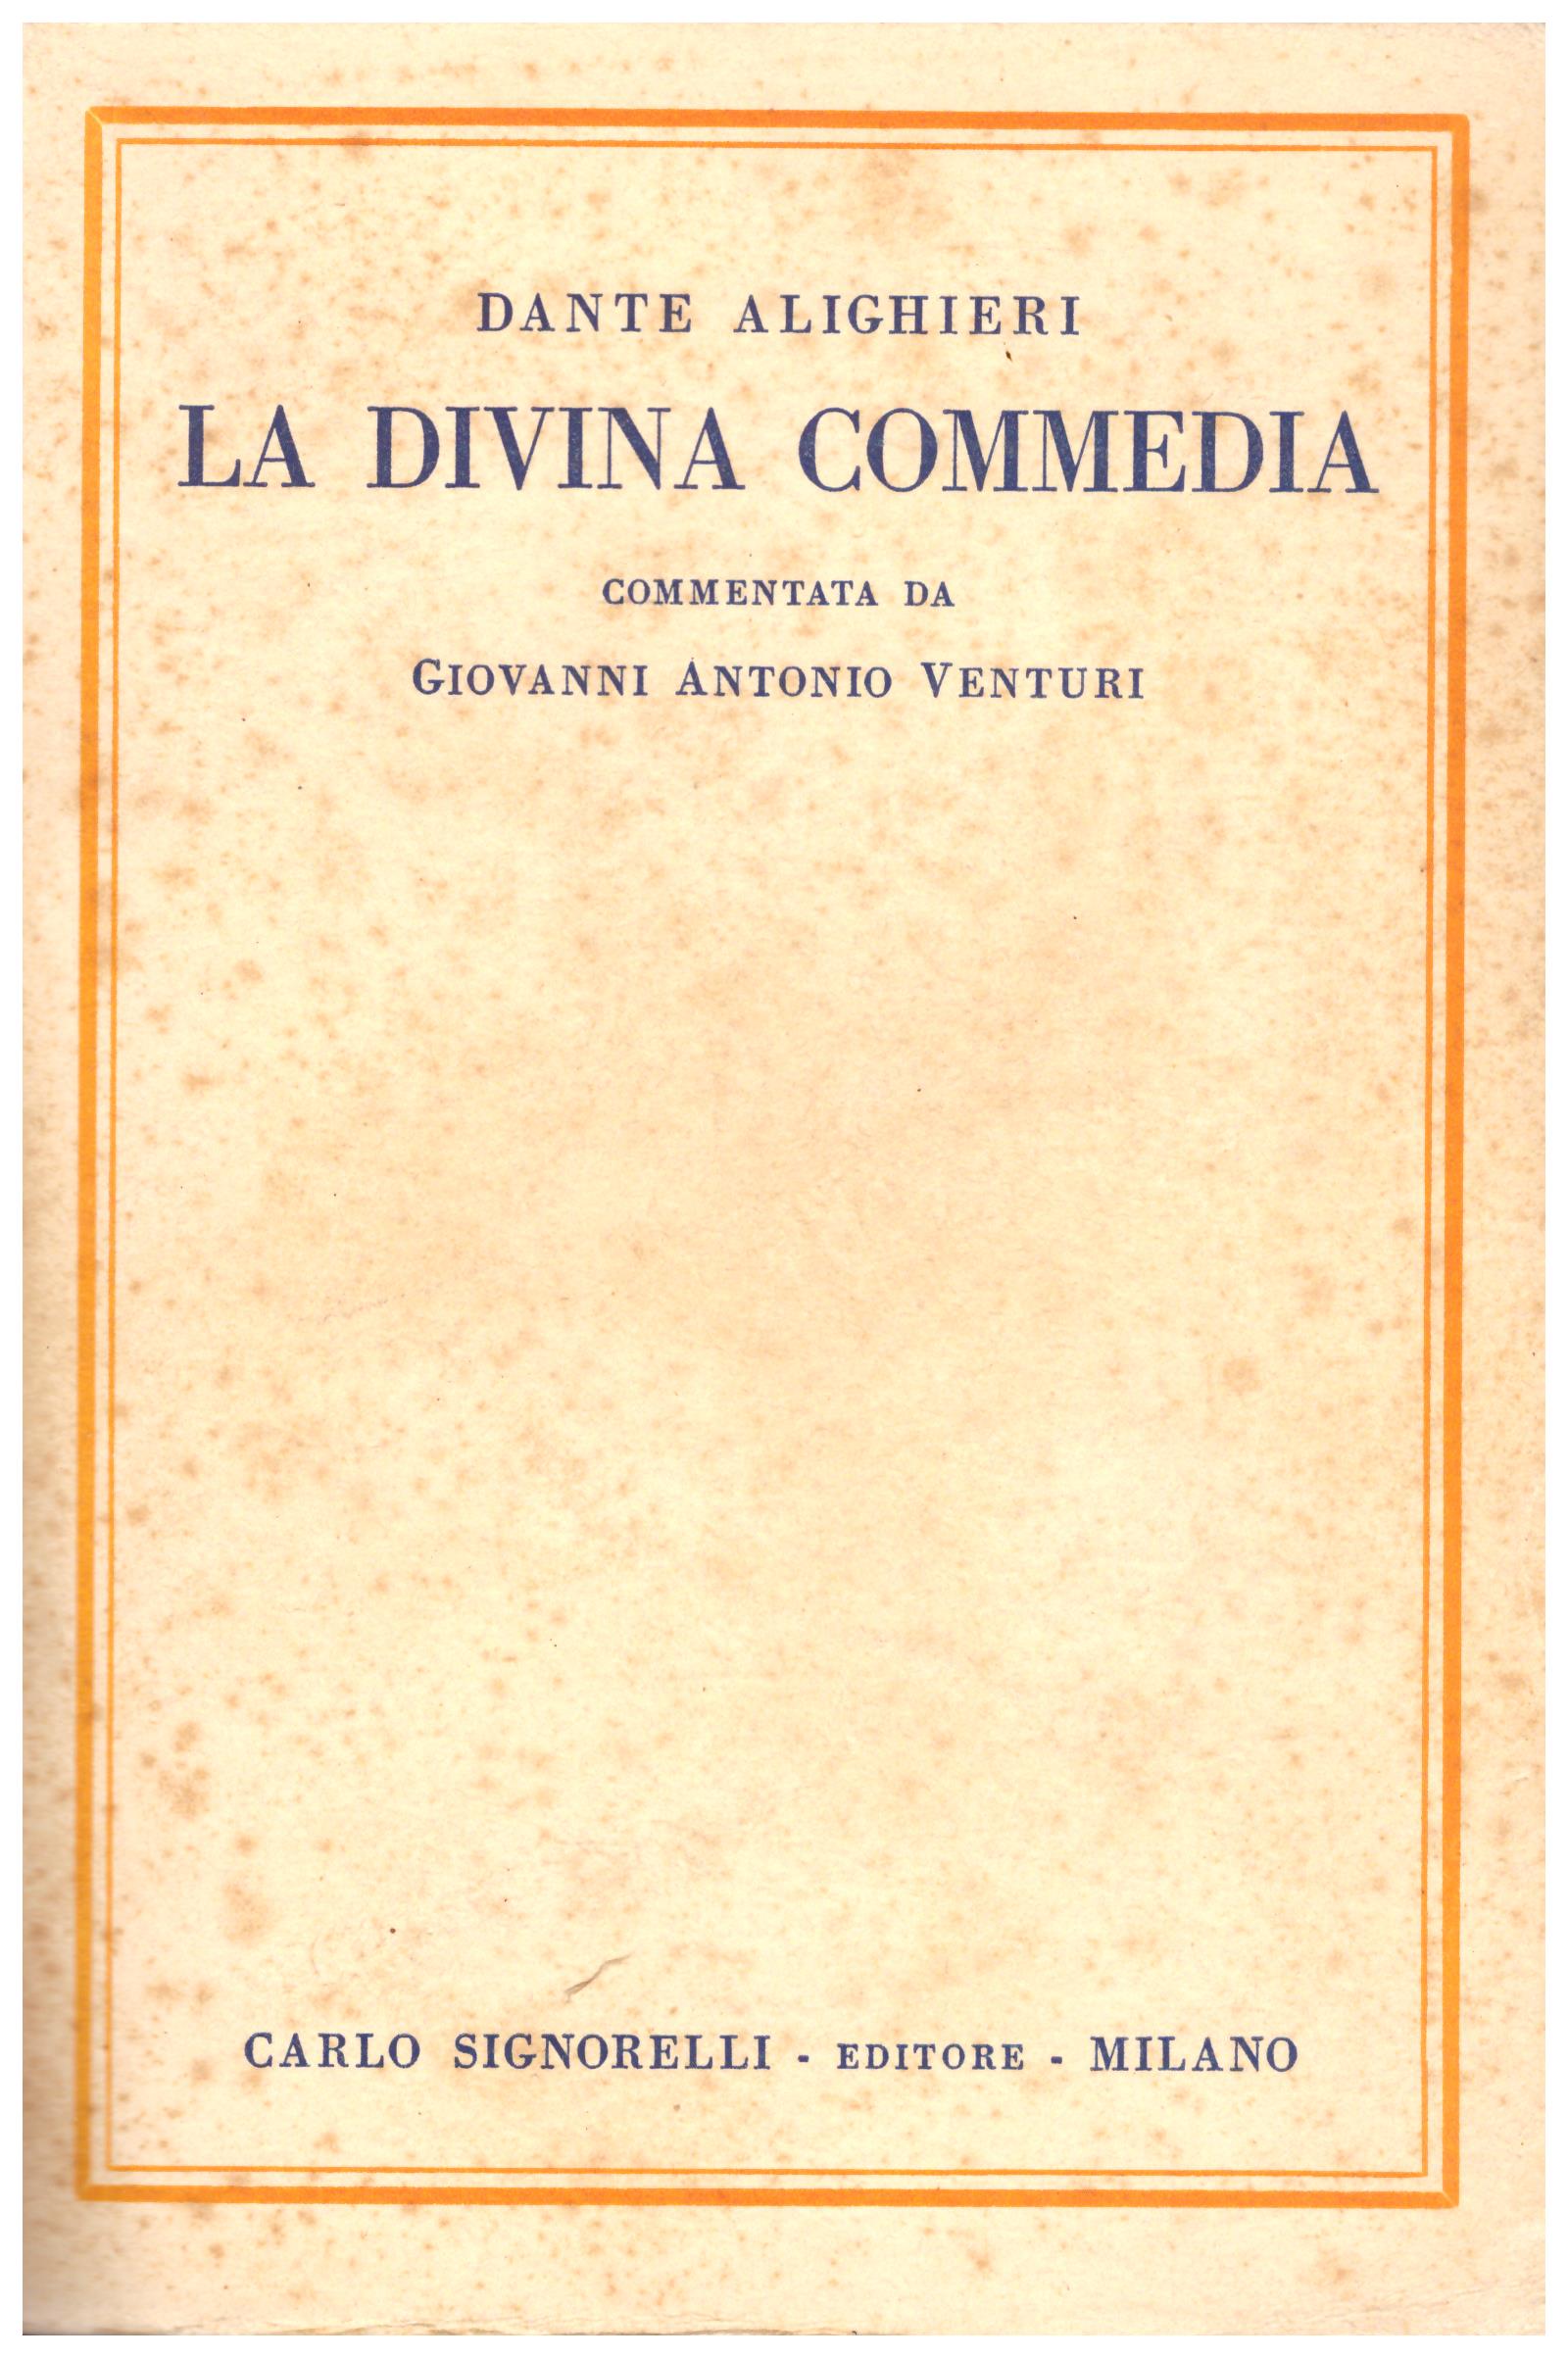 Titolo: La divina commedia  Autore : Dante Alighieri, Commentata da Giovanni Antonio Venturi Editore: Carlo Signorelli, Milano 1938